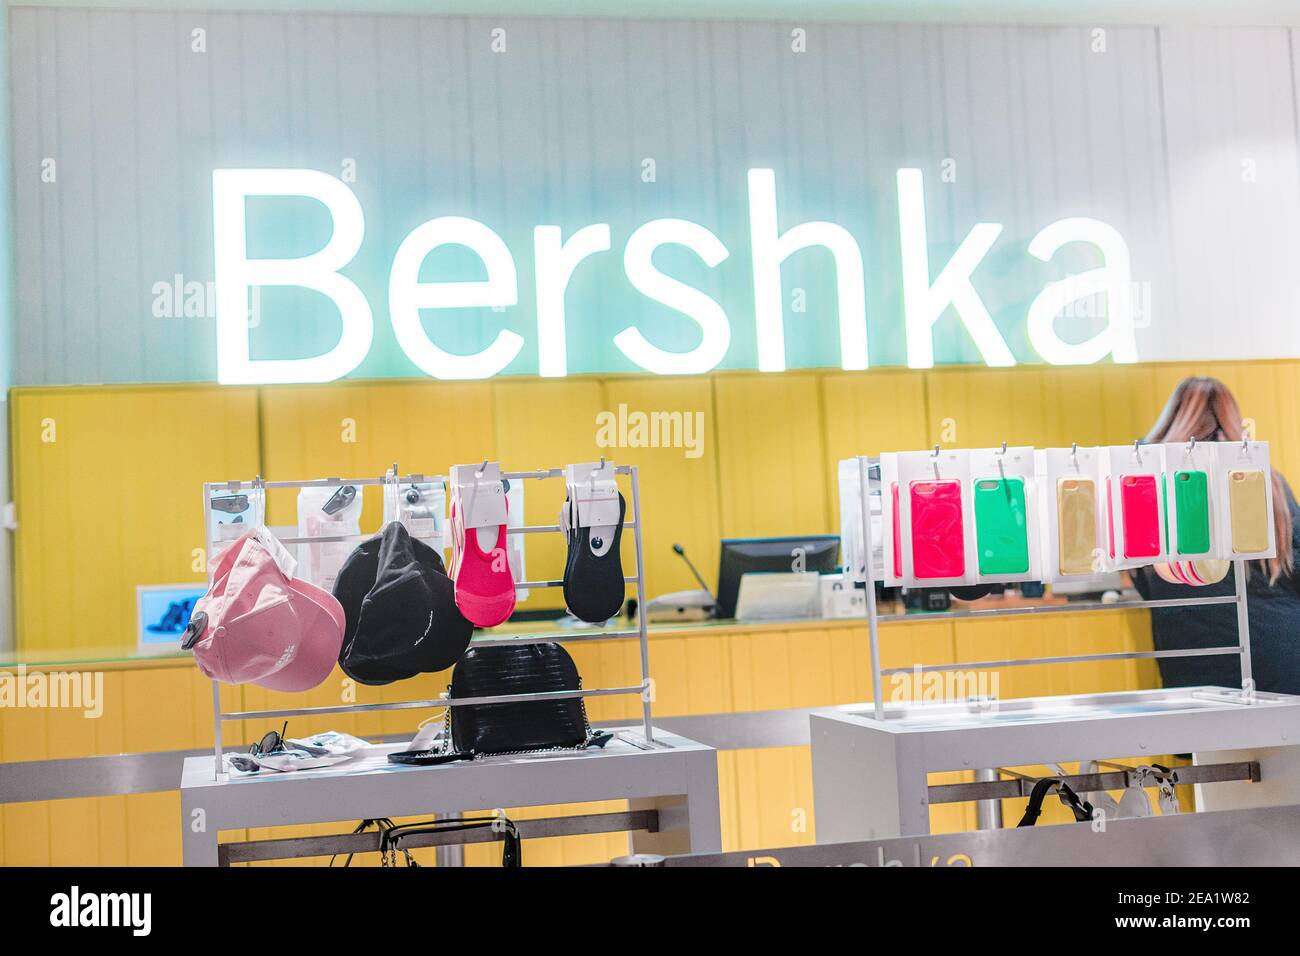 14 marzo 2020, Ufa, Russia: La catena di negozi spagnola Bershka. Vendita di  abbigliamento e accessori di moda Foto stock - Alamy